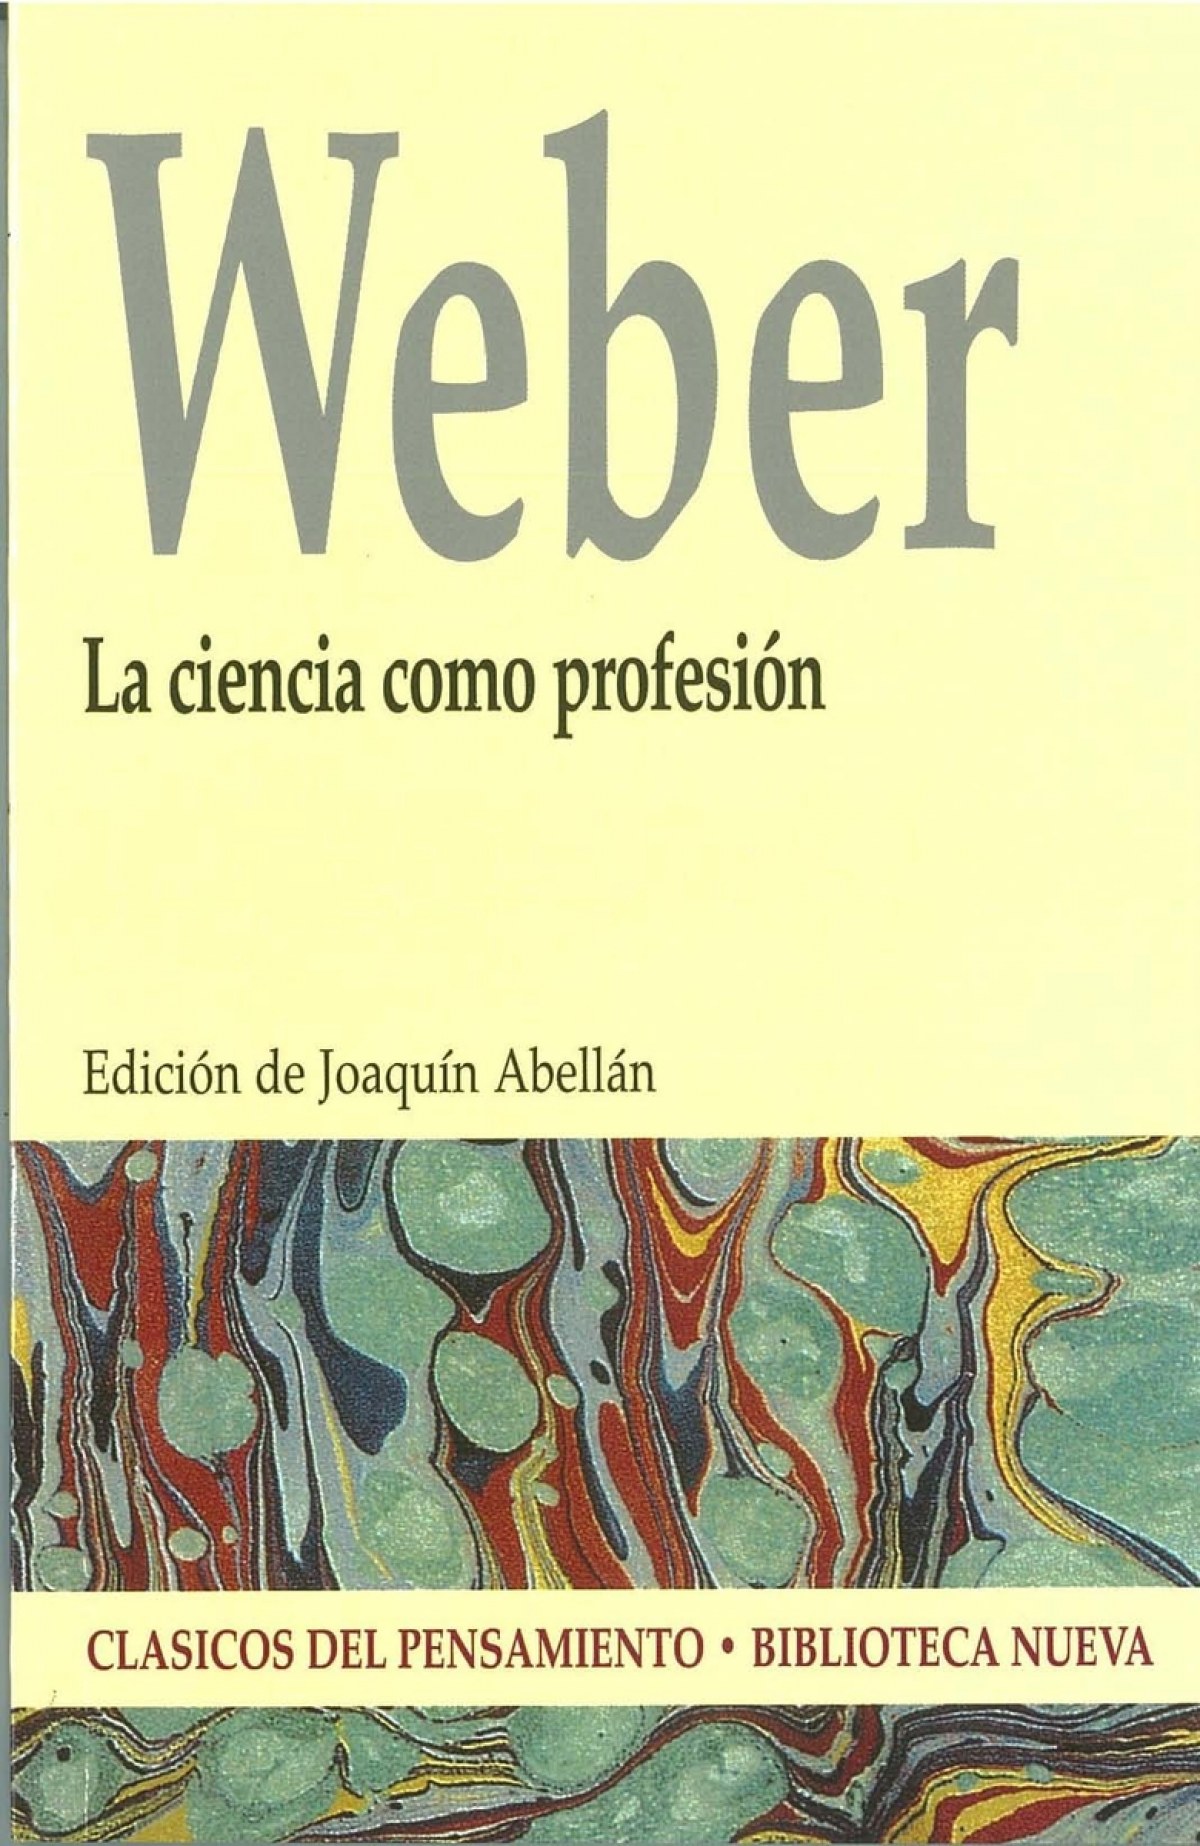 Ciencia como profesion,la - Weber, Max